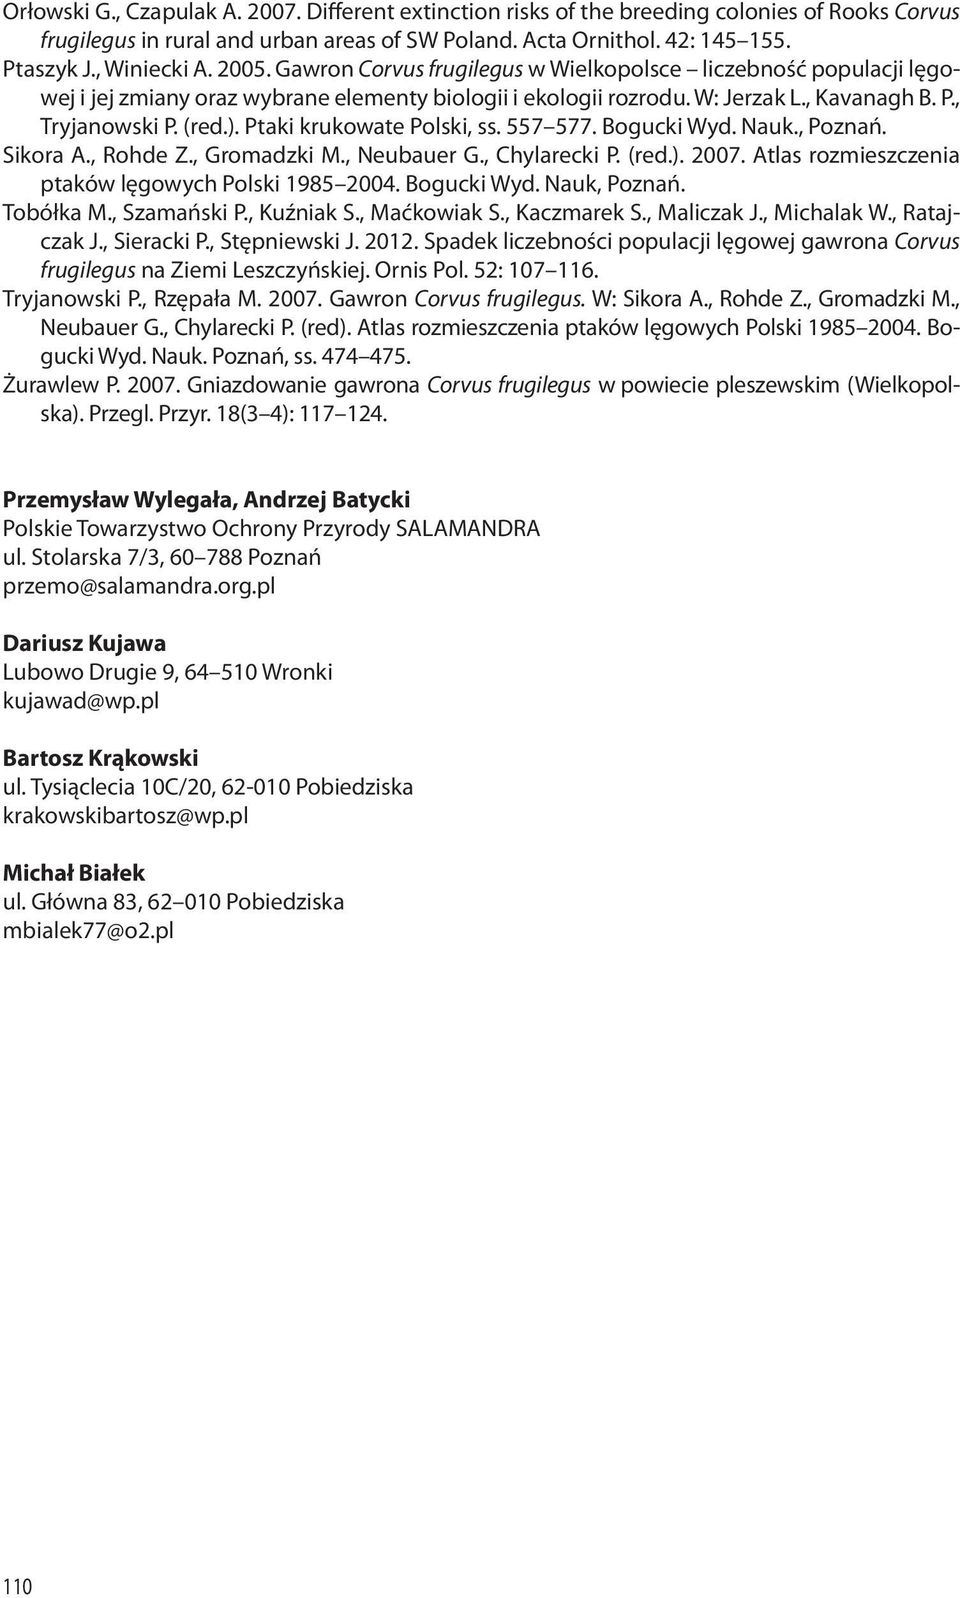 Ptaki krukowate Polski, ss. 557 577. Bogucki Wyd. Nauk., Poznań. Sikora A., Rohde Z., Gromadzki M., Neubauer G., Chylarecki P. (red.). 2007. Atlas rozmieszczenia ptaków lęgowych Polski 1985 2004.